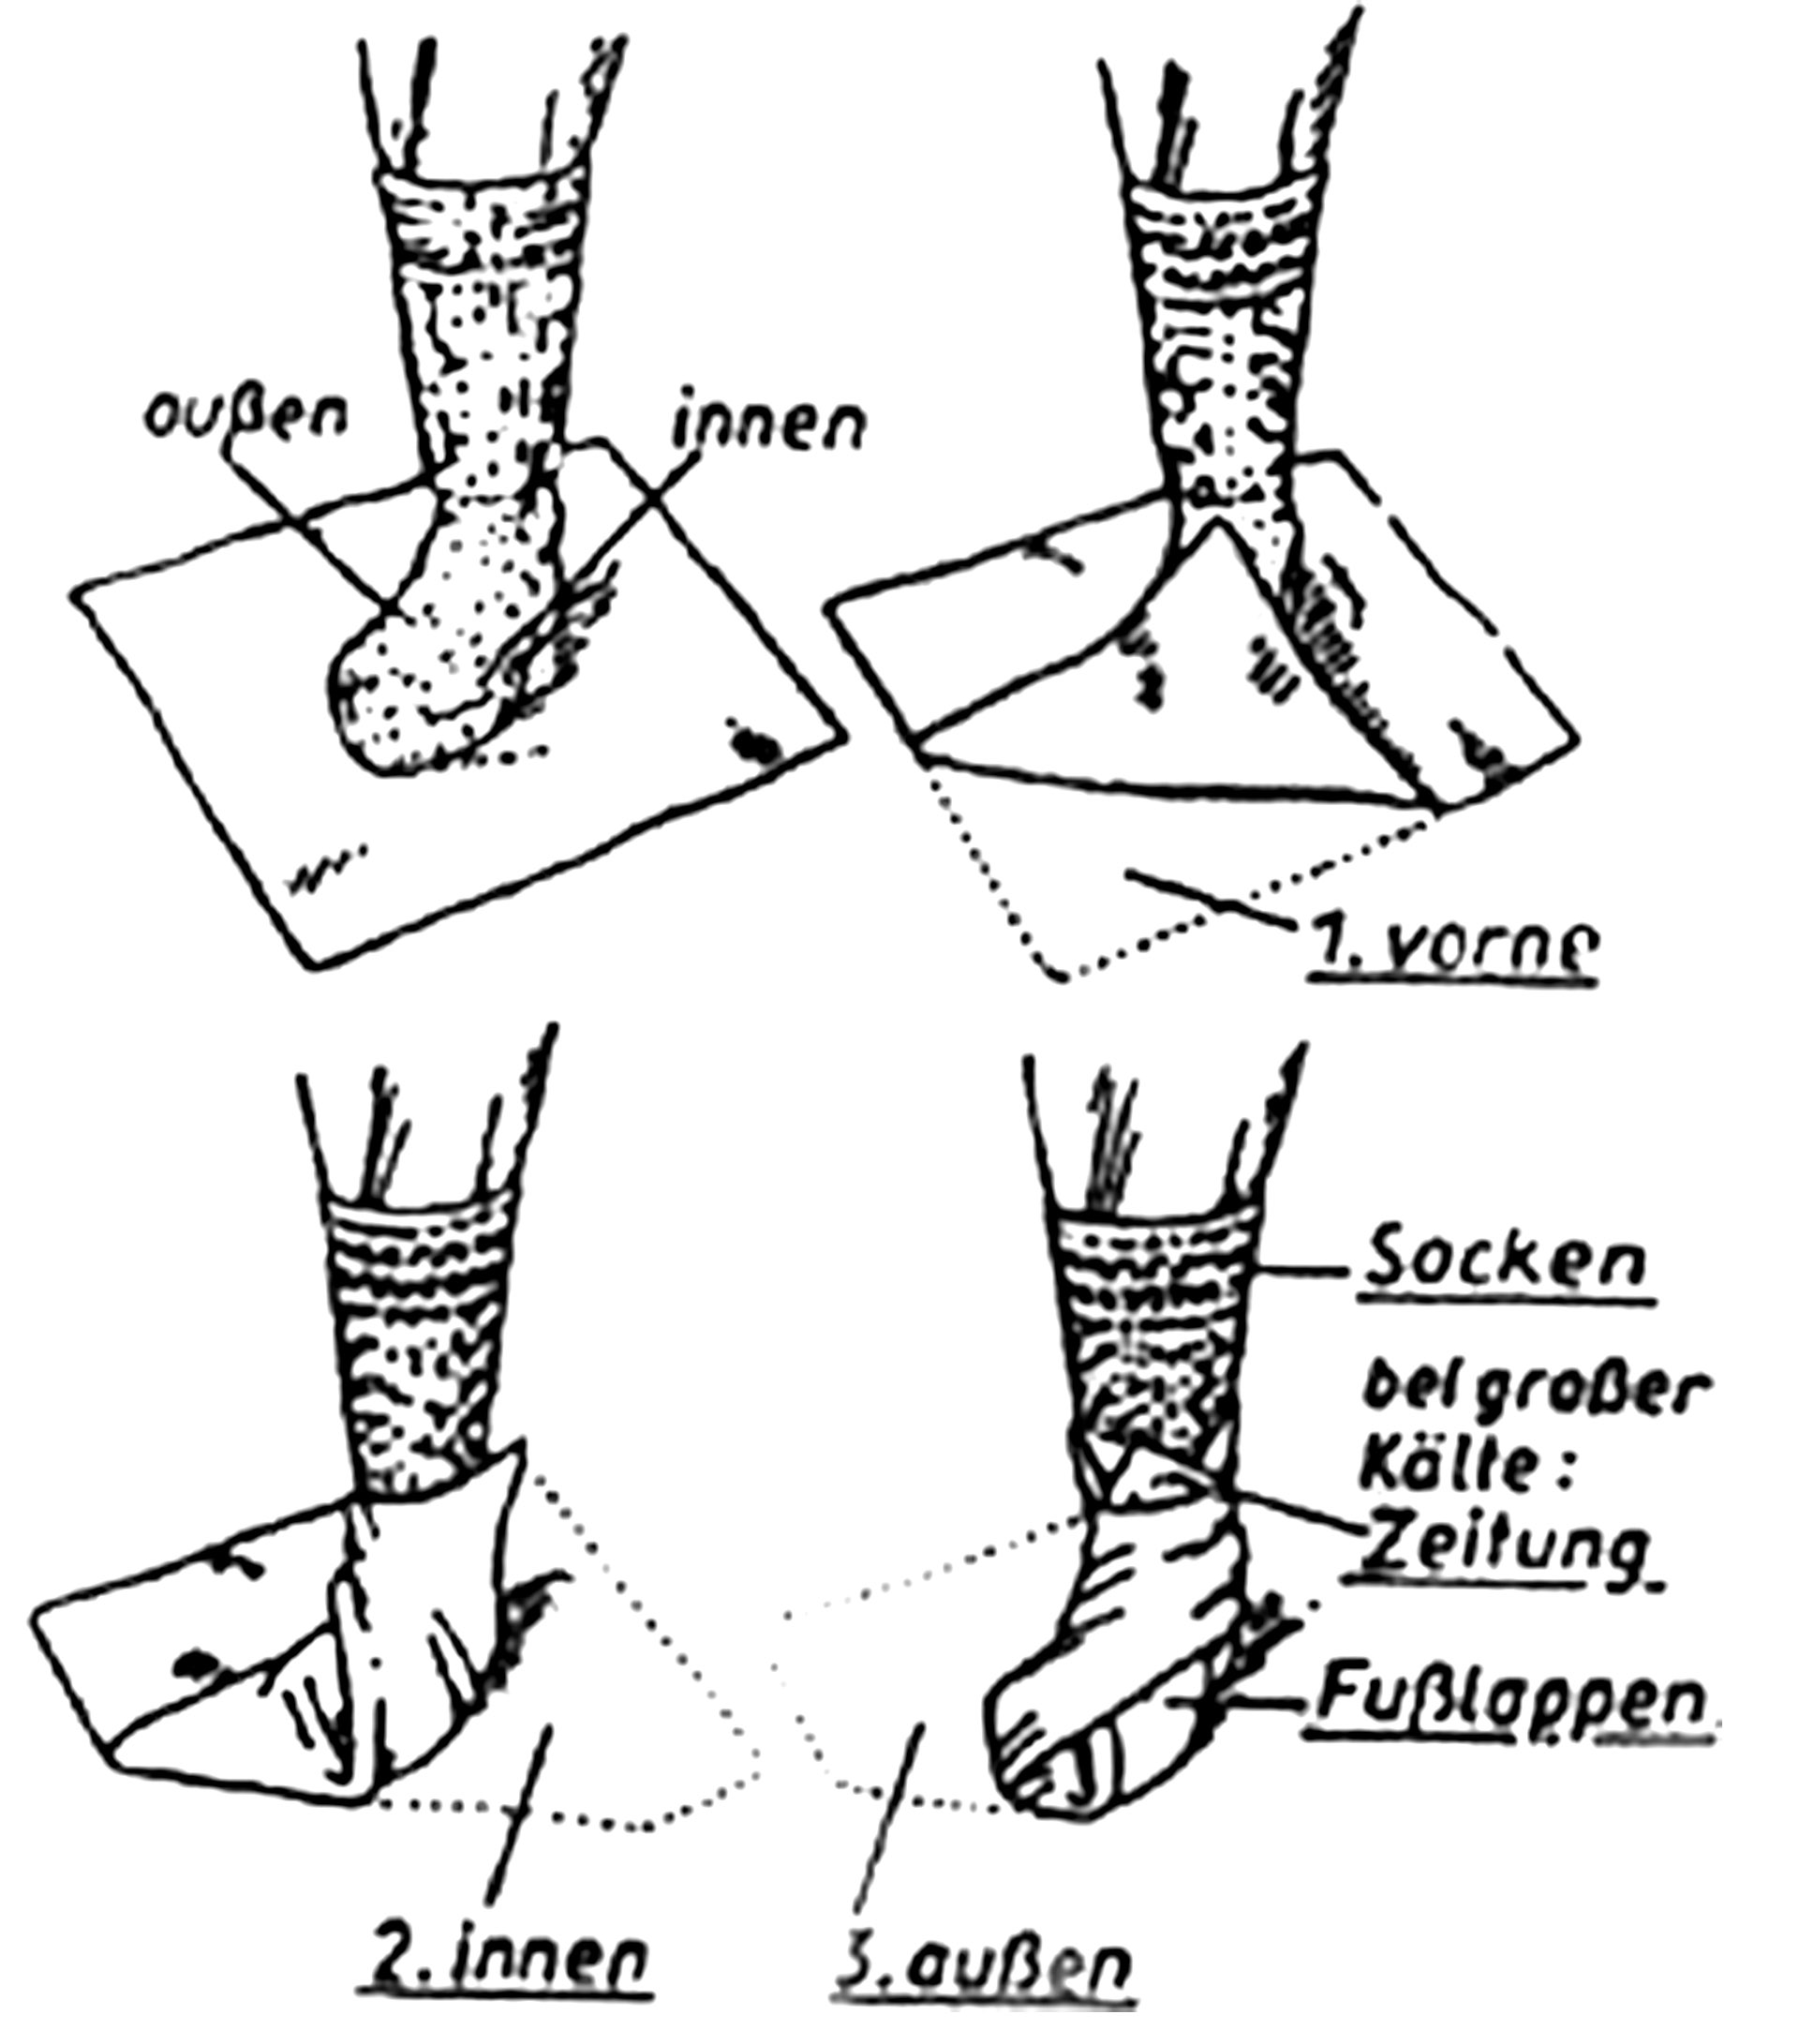 German Foot